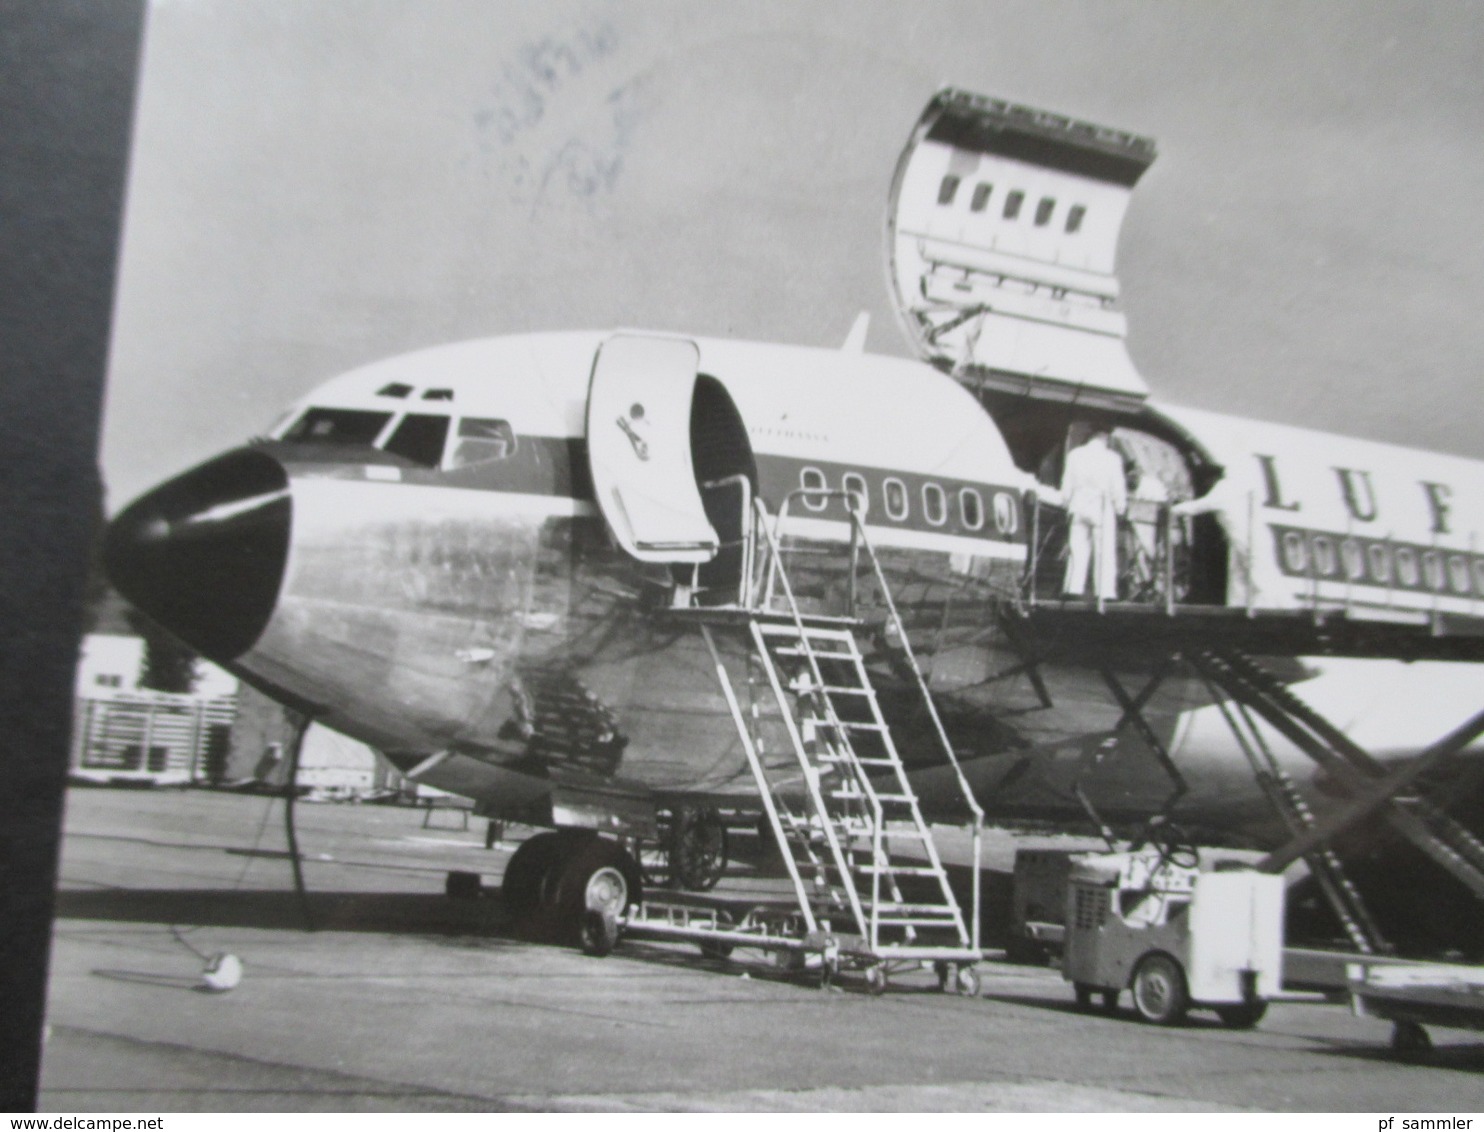 2 Echtfoto AK 1960er Jahre Supercargo Boeing 707 / 330 C Und Berlin Flughafen Tempelhof Pan America - 1946-....: Modern Tijdperk